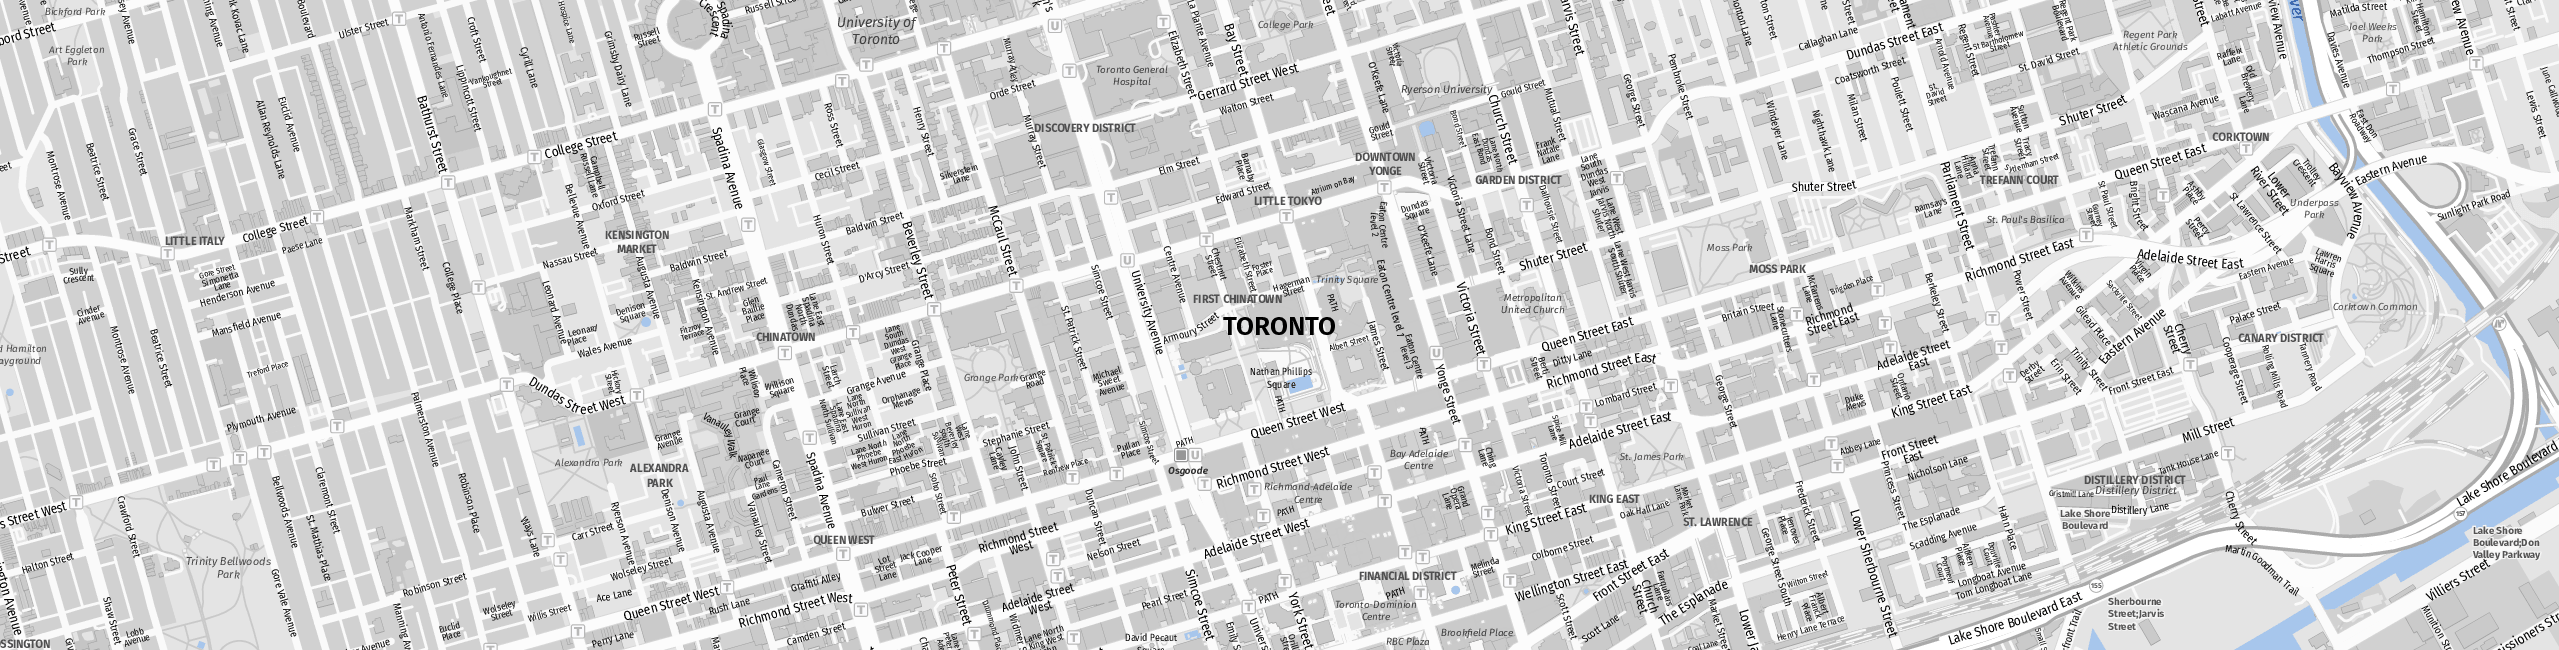 Stadtplan Toronto zum Downloaden.